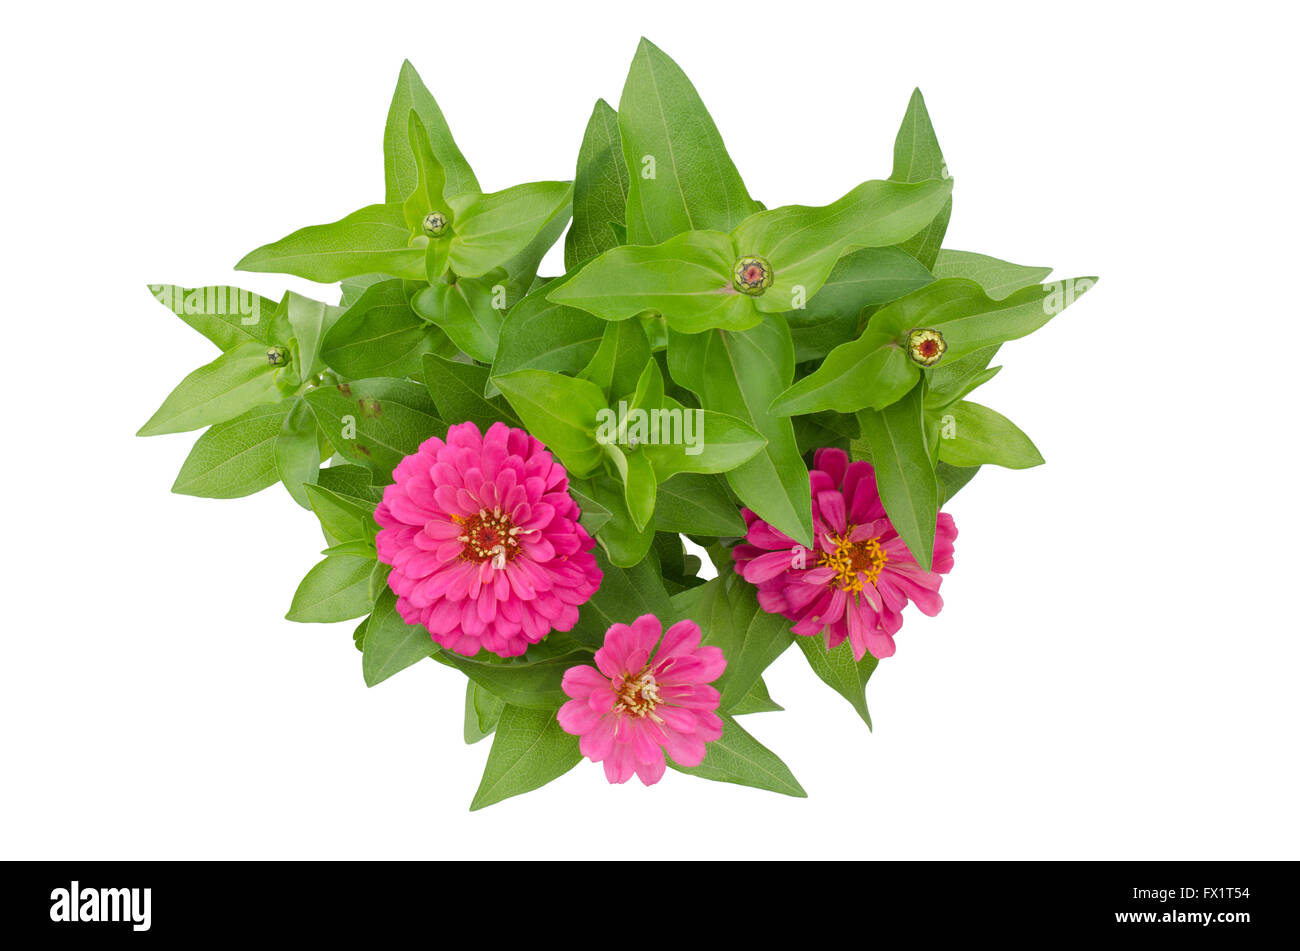 zinnia flower isolated on white background Stock Photo